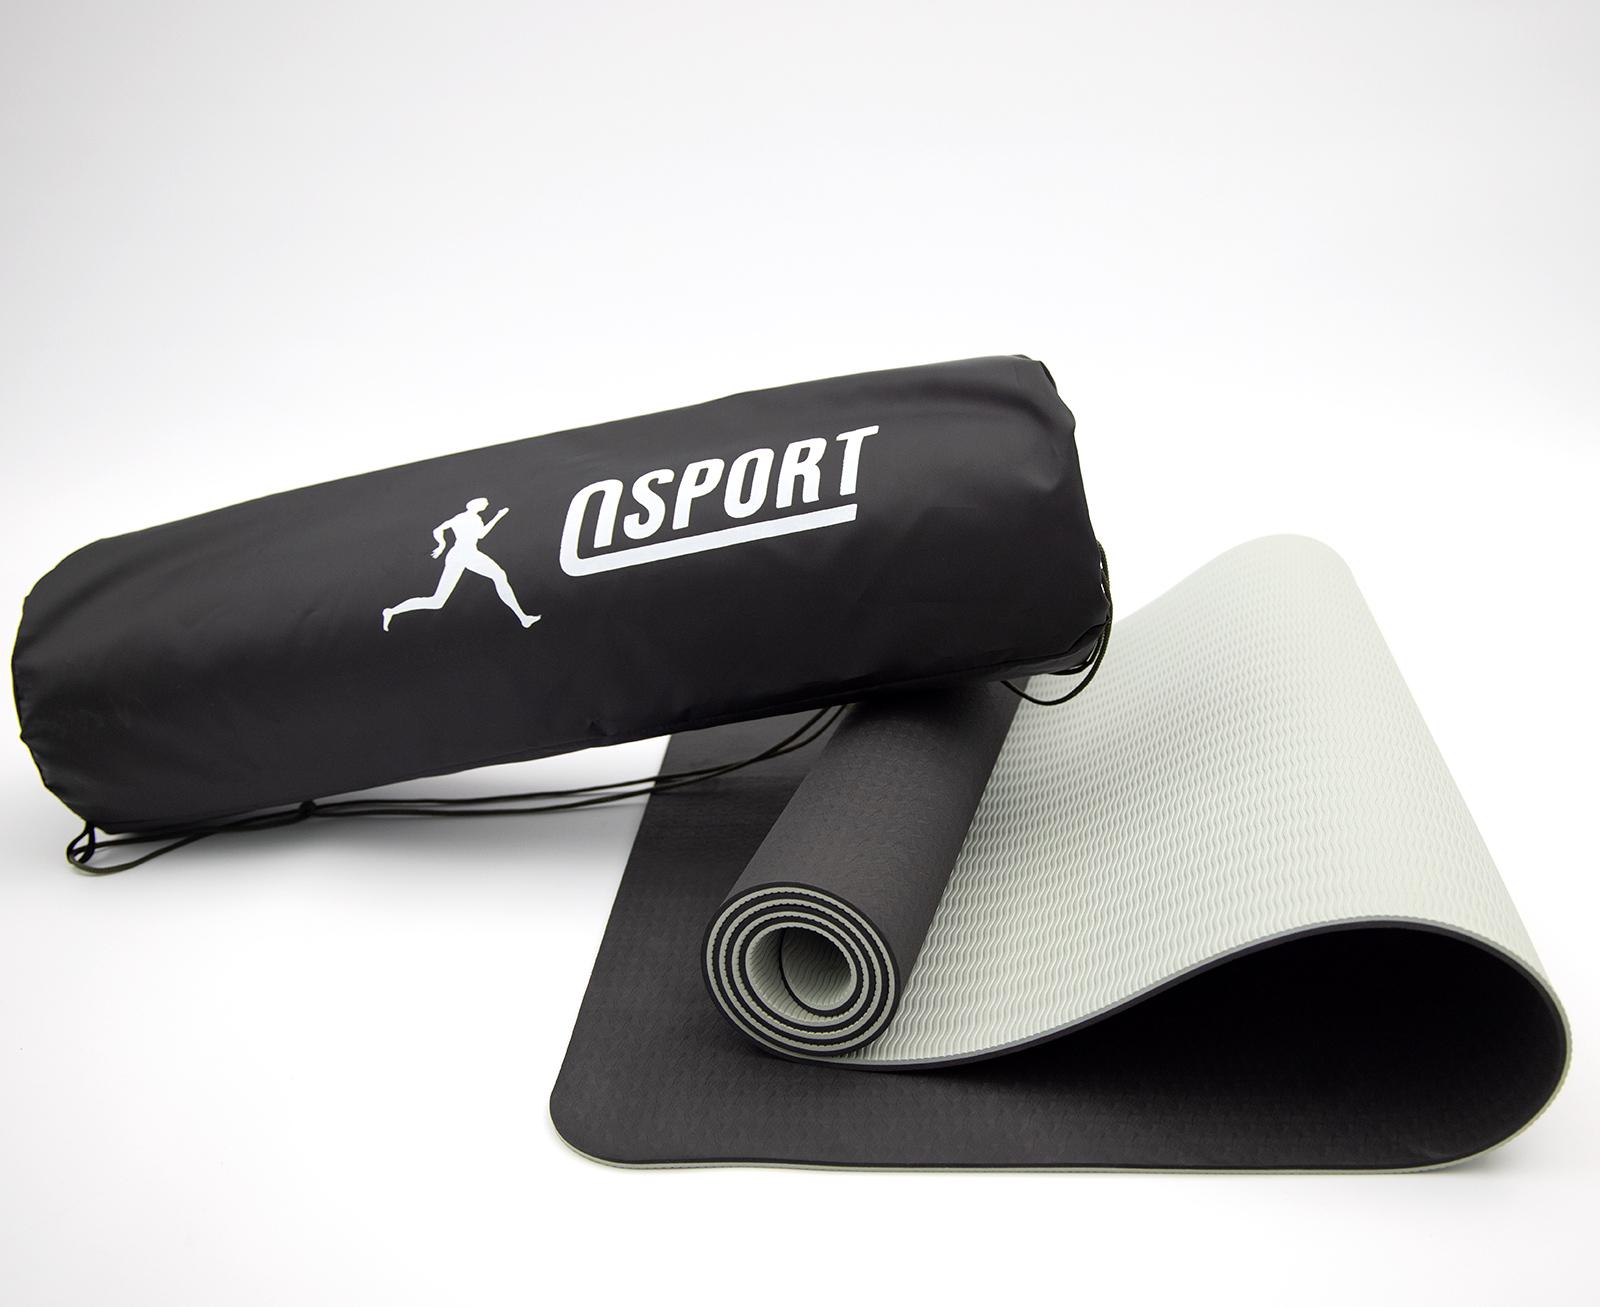 Килимок для йоги та фітнесу OSPORT n-0007 Yoga ECO Pro 6 мм Чорно-сірий